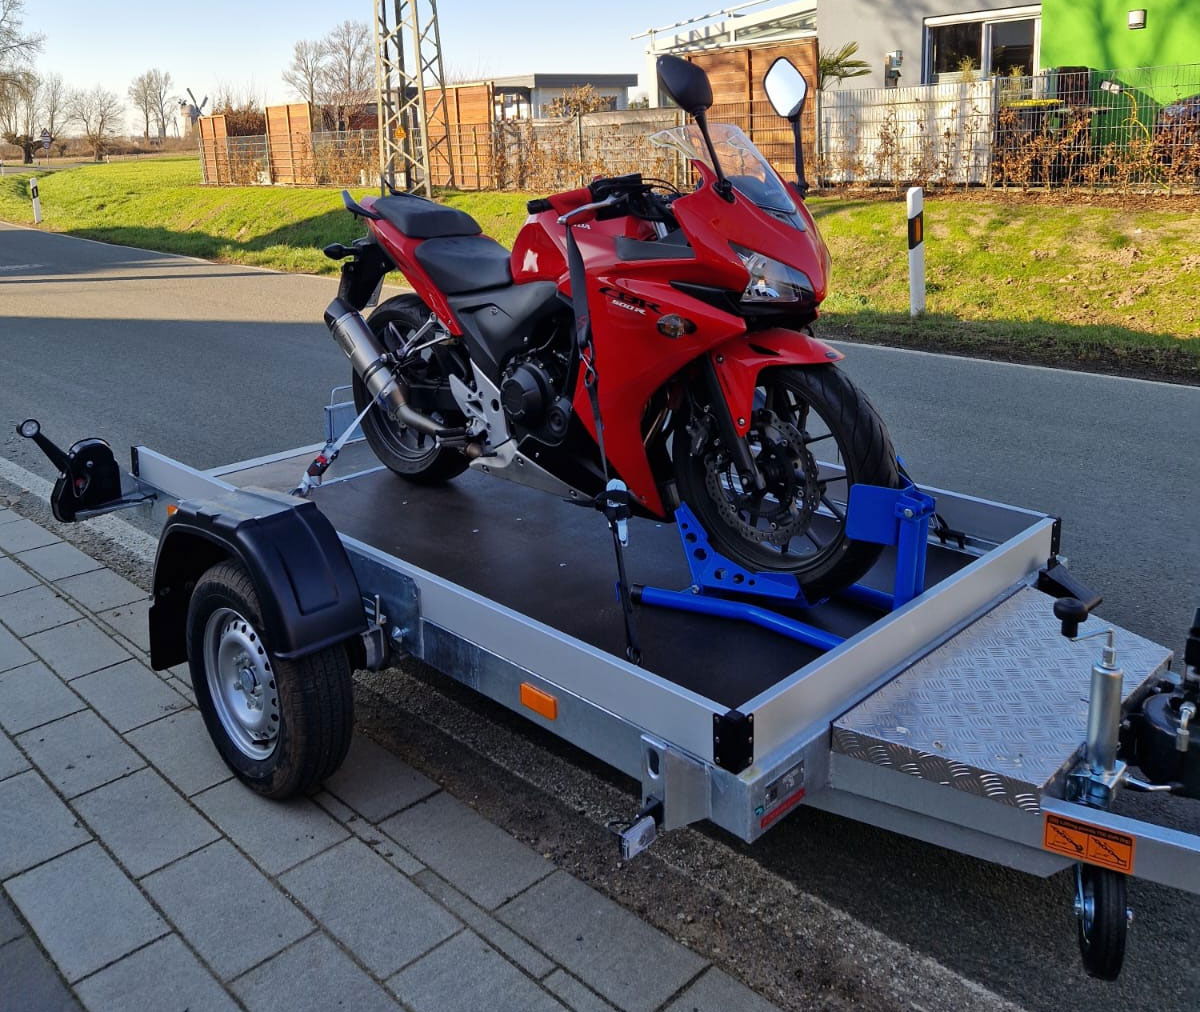 Motorrad wird auf einem speziellen Motorradanhänger transportiert